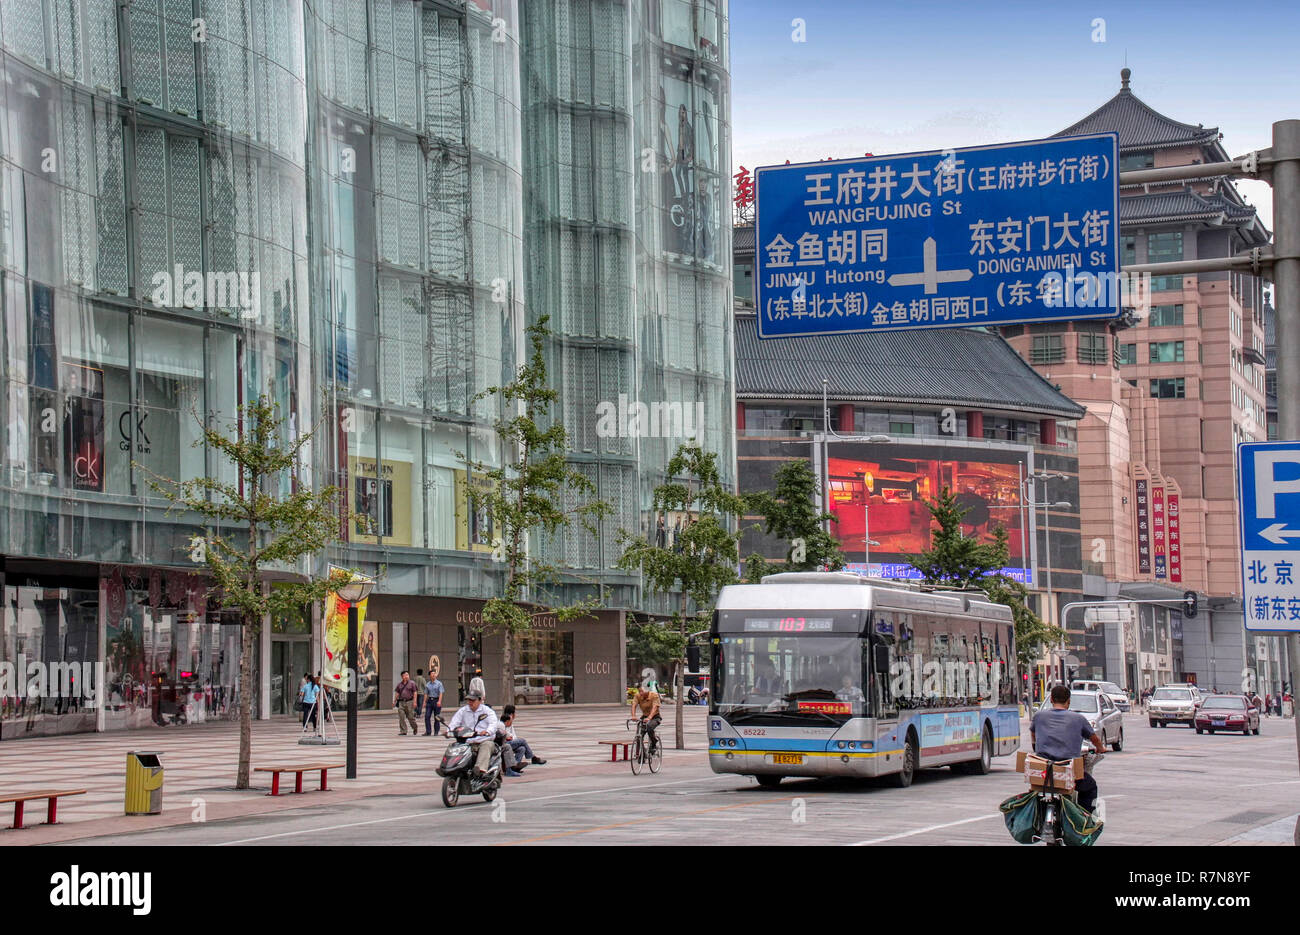 La calle Wangfujing recinto de tiendas del centro de la ciudad con la gente, autobuses, coches, motos. hombre montando bicicleta, Beijing, China Foto de stock